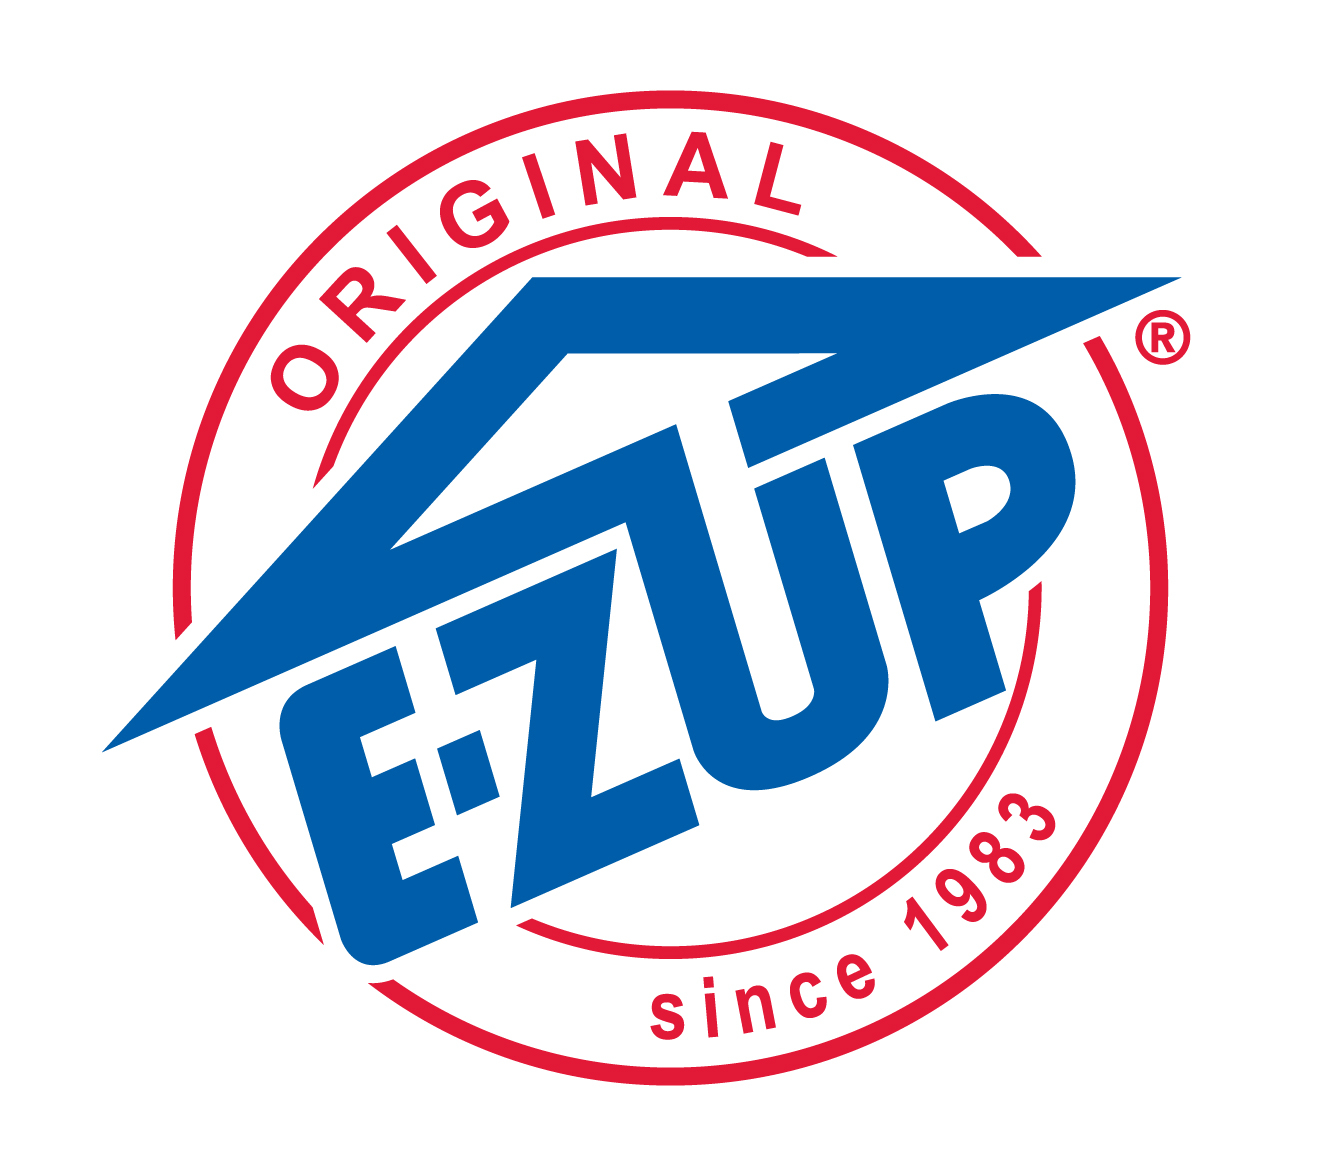 ezup Logo